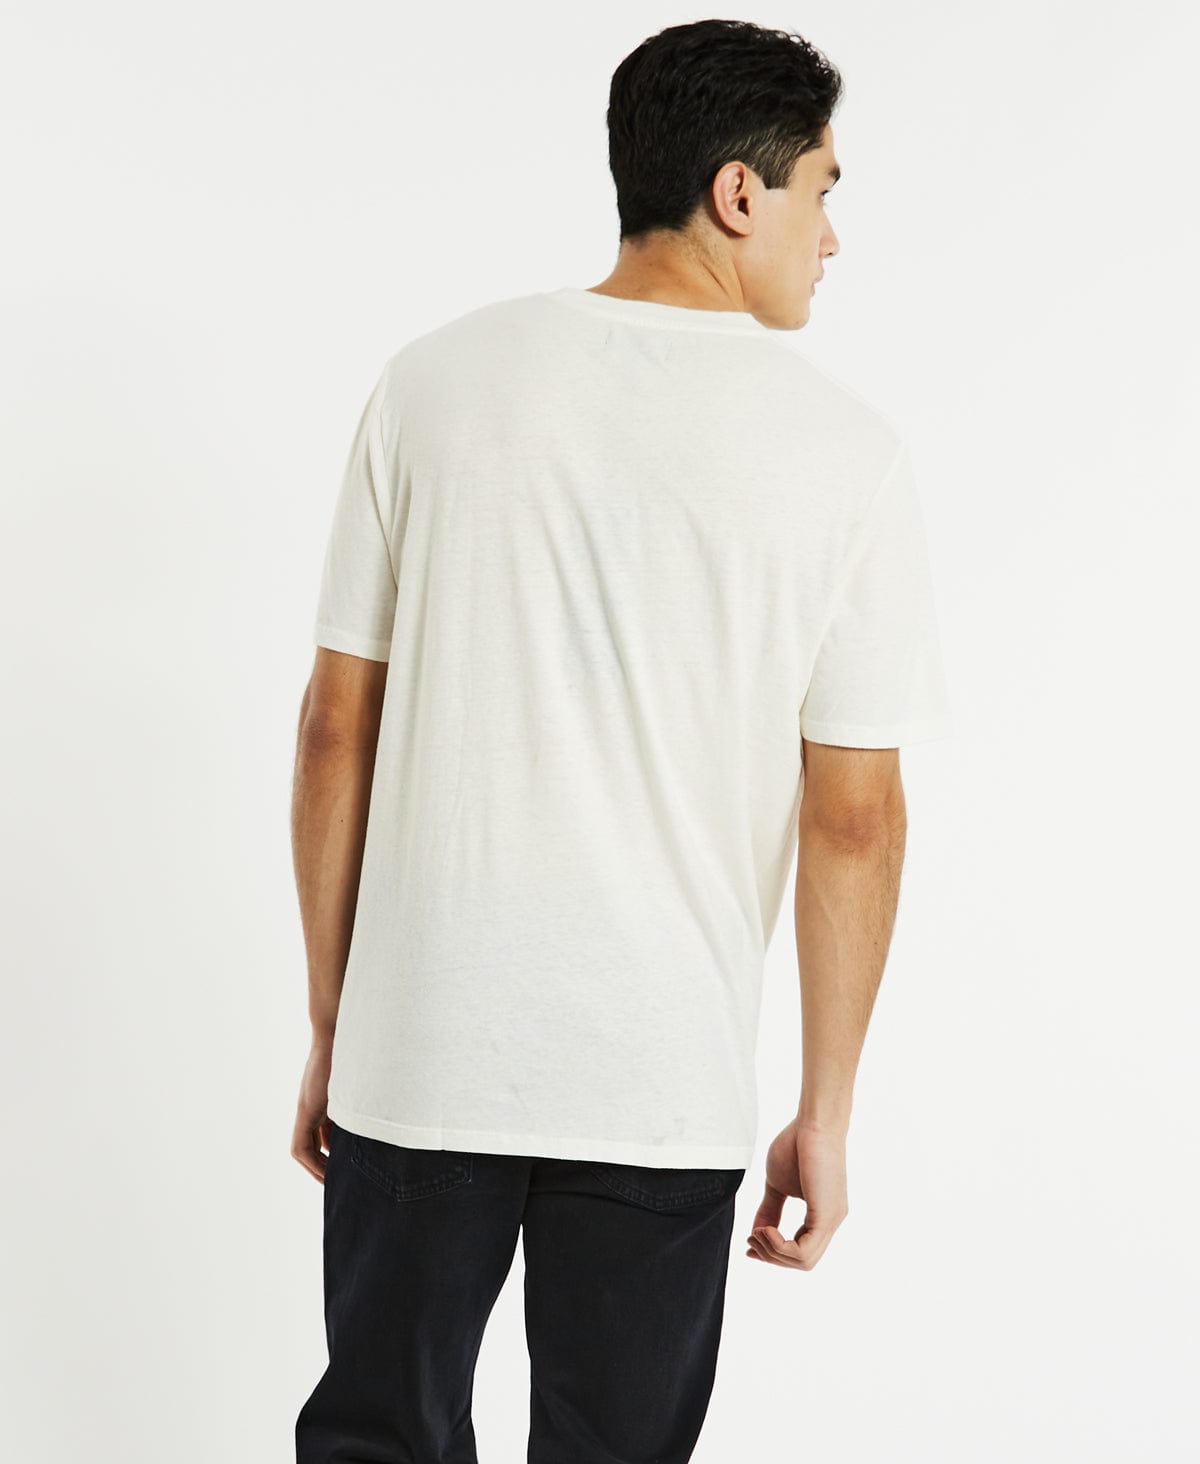 Wrangler 47 T-Shirt Vintage White – Neverland Store